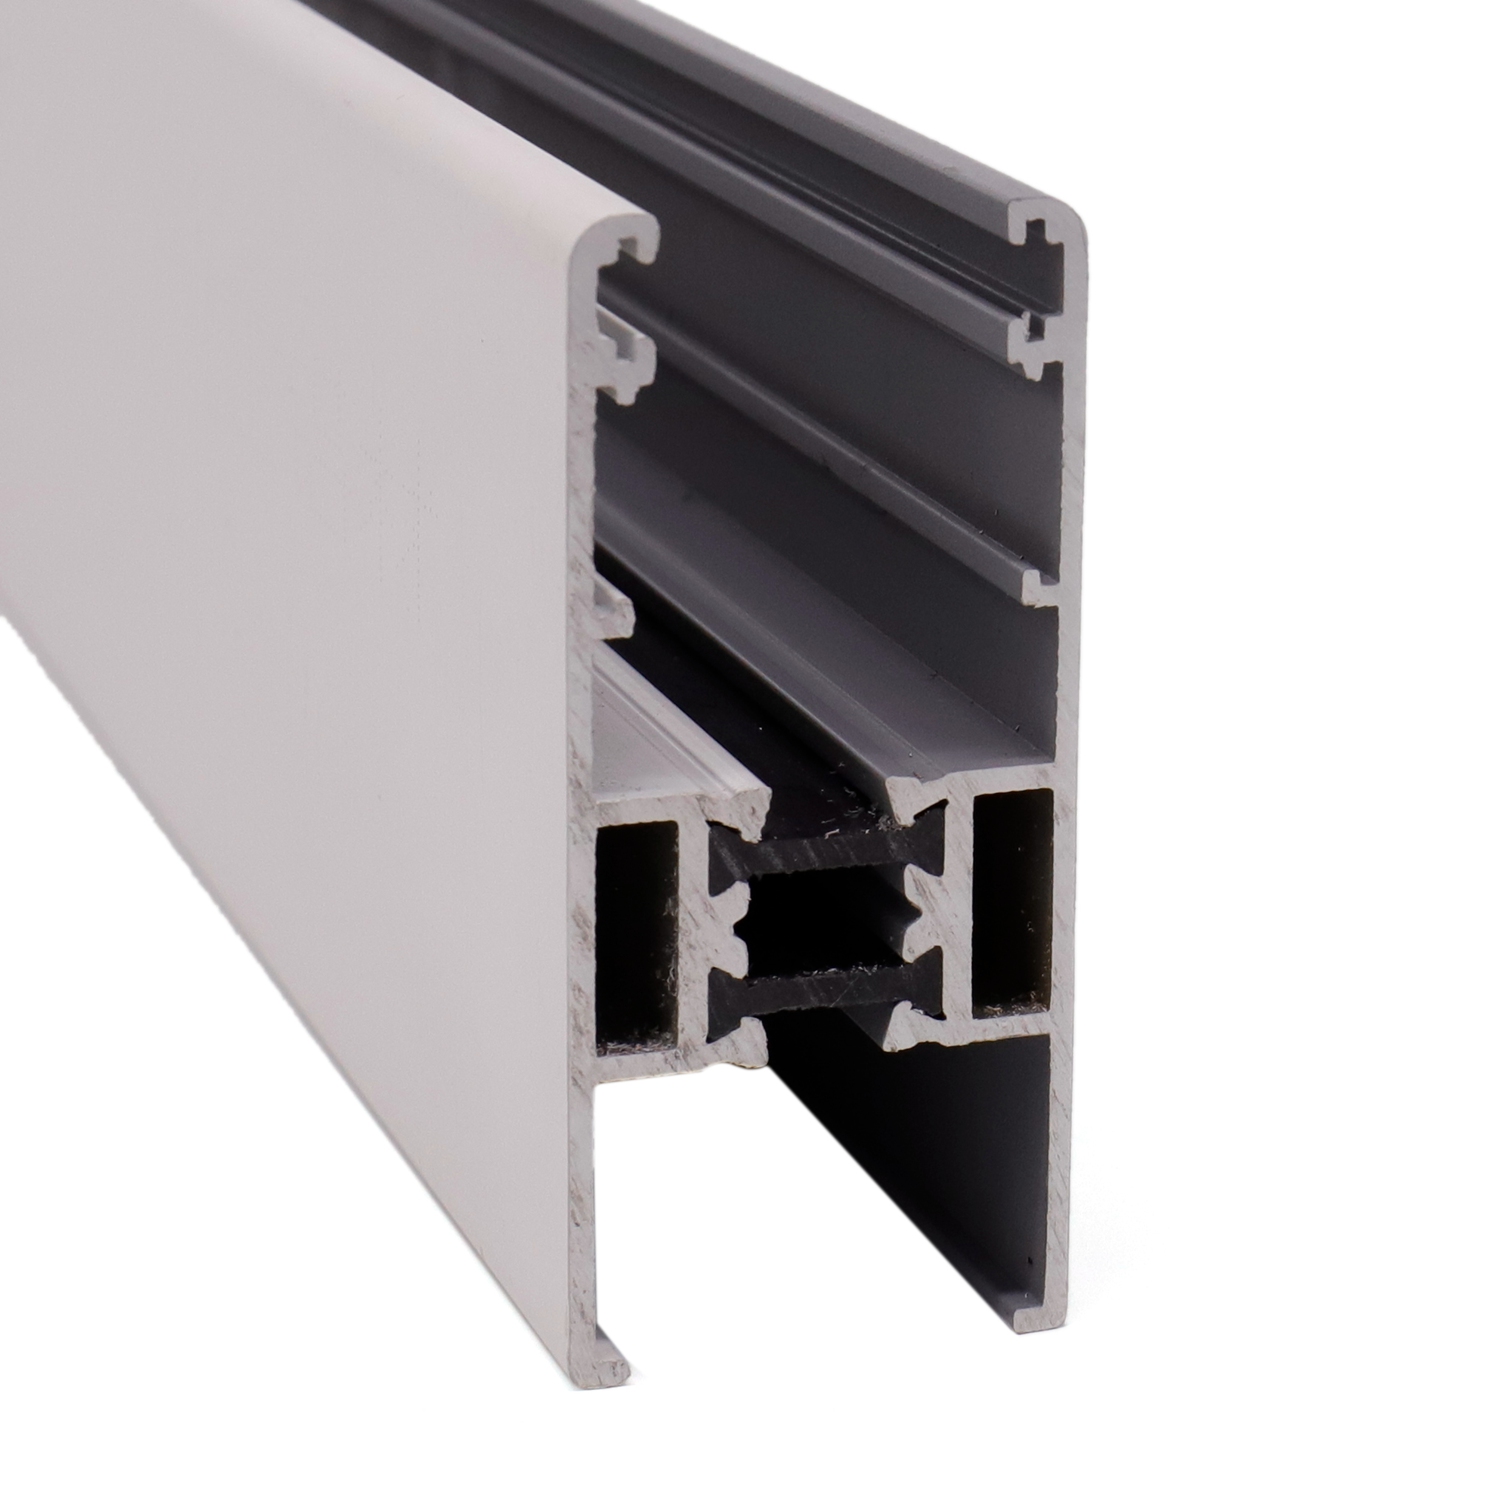 Thermisch onderbroken aluminium extrusieprofiel voor schuifdeuren en ramen
